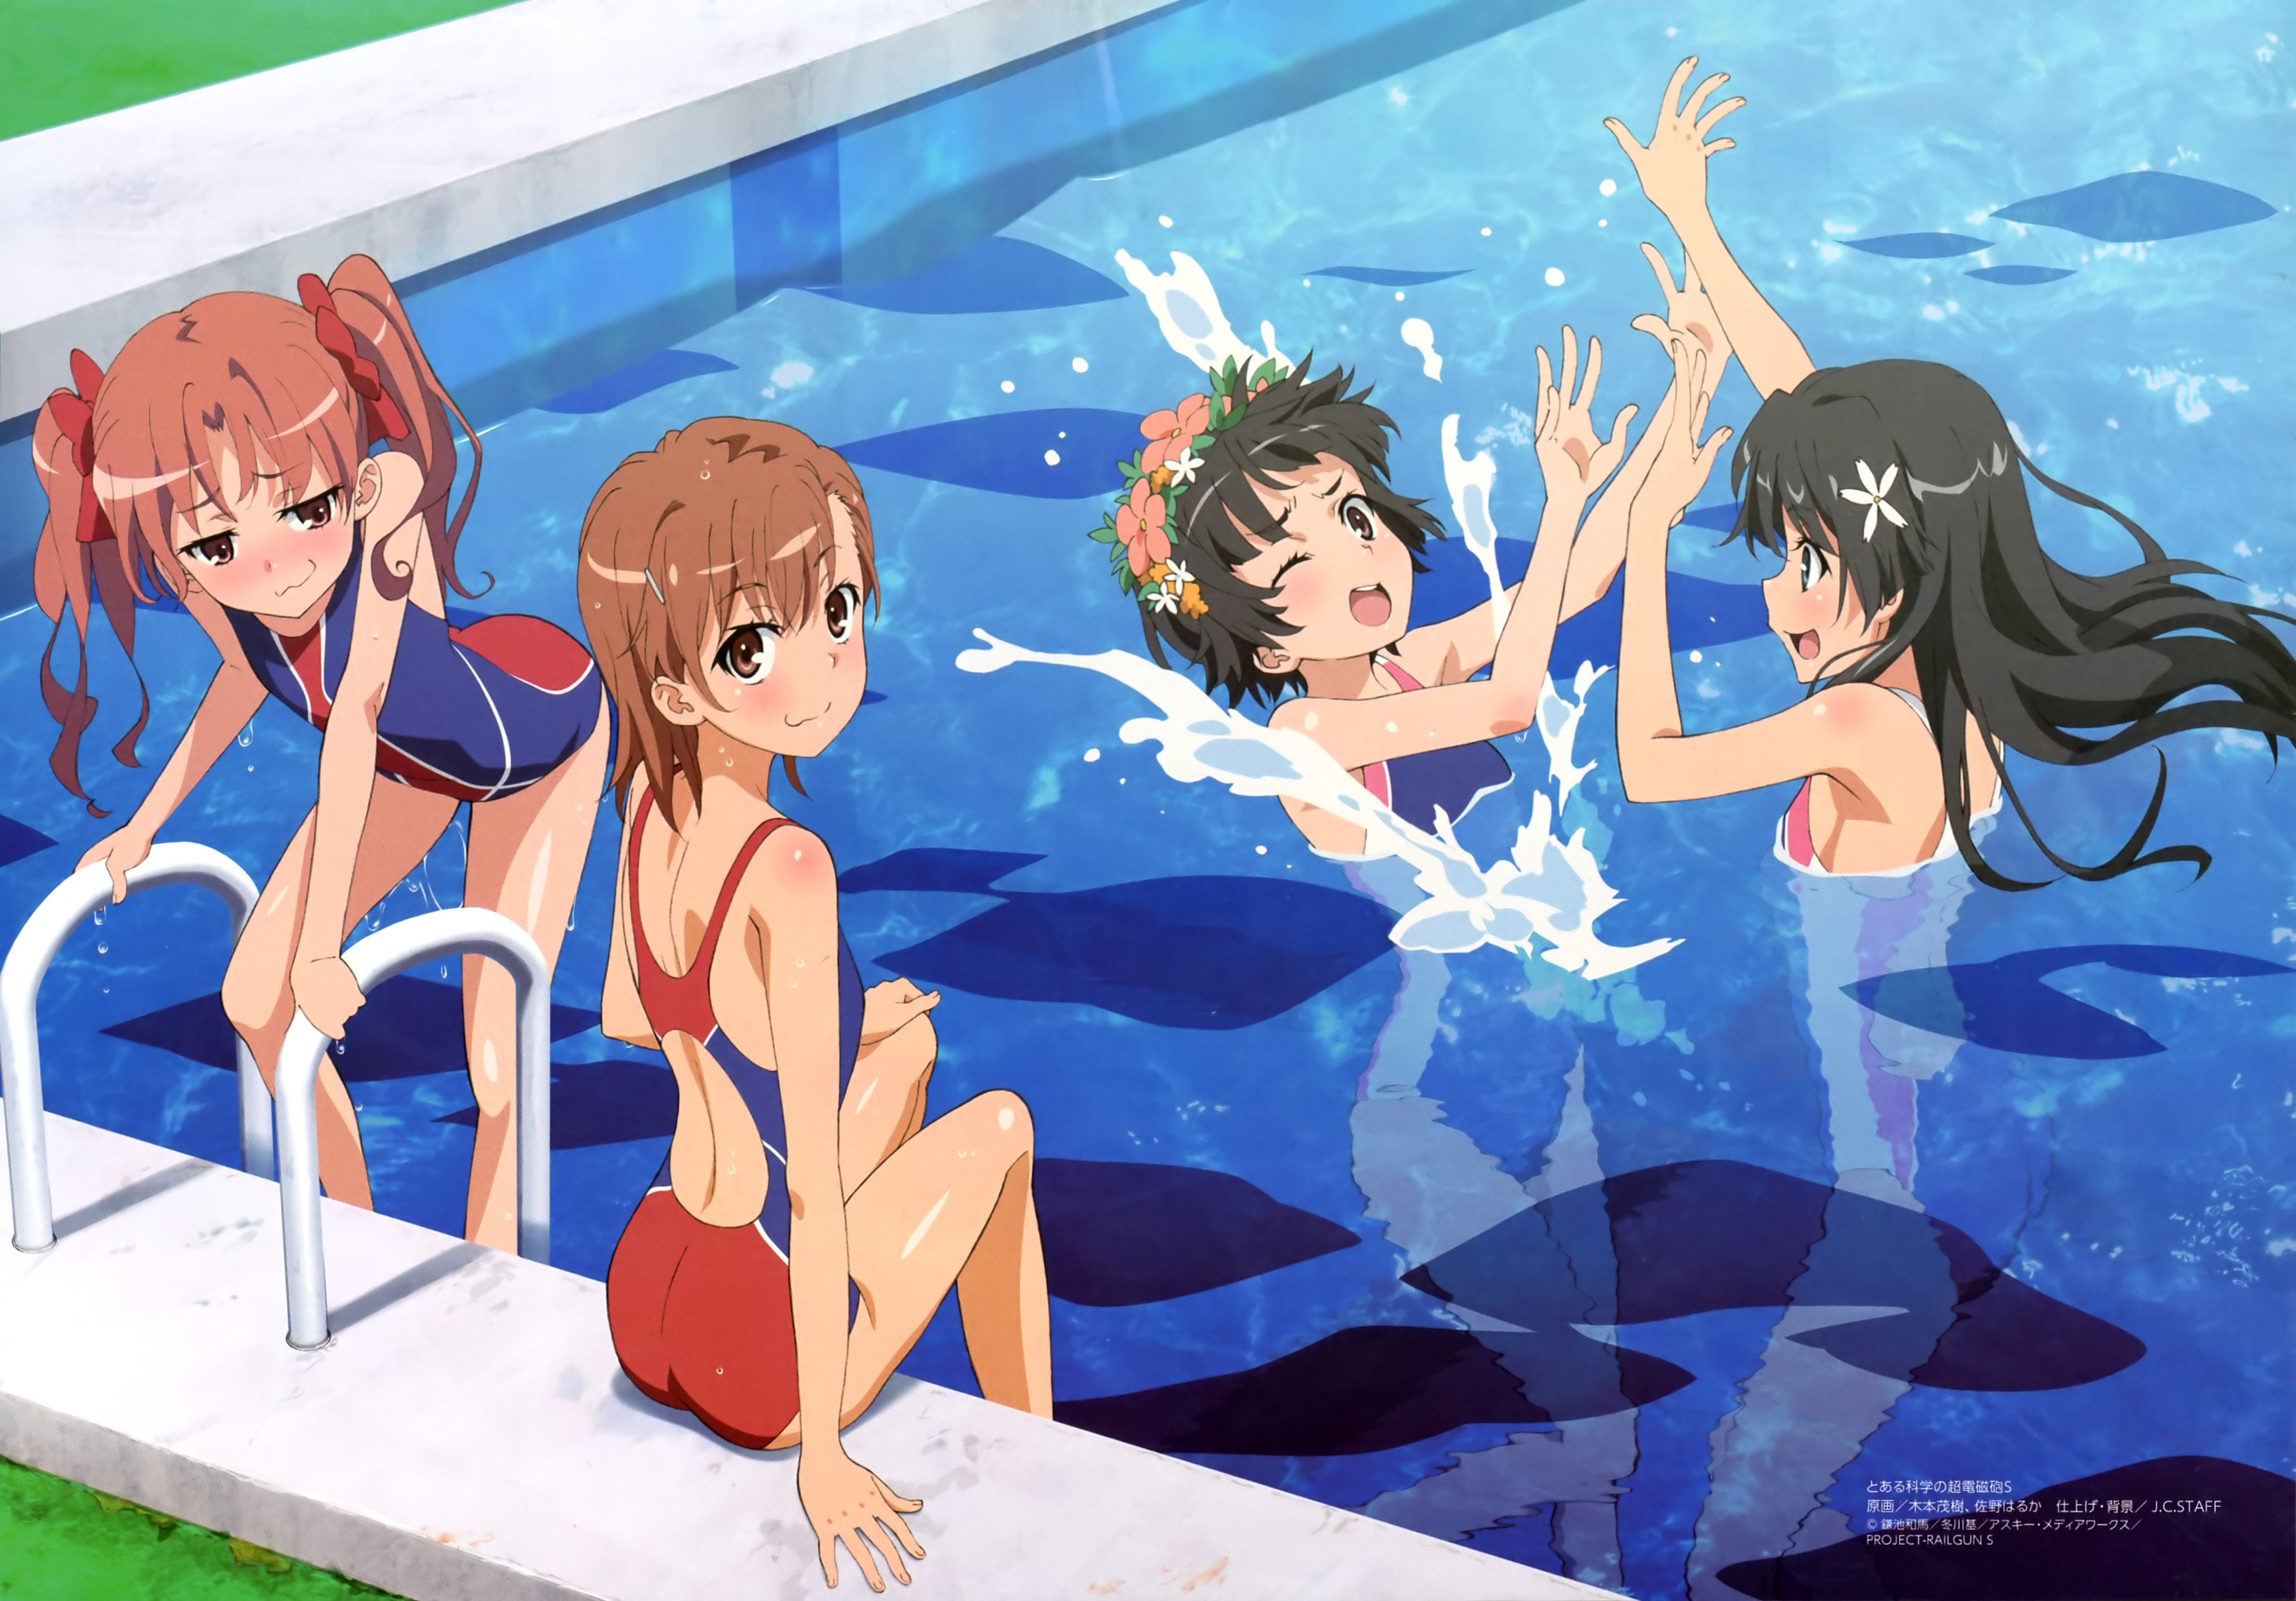 Anime 4078x2844 Misaka Mikoto Shirai Kuroko Saten Ruiko Uiharu Kazari To Aru Kagaku no Railgun anime girls swimming pool anime one-piece swimsuit group of women swimwear in water brunette redhead bright